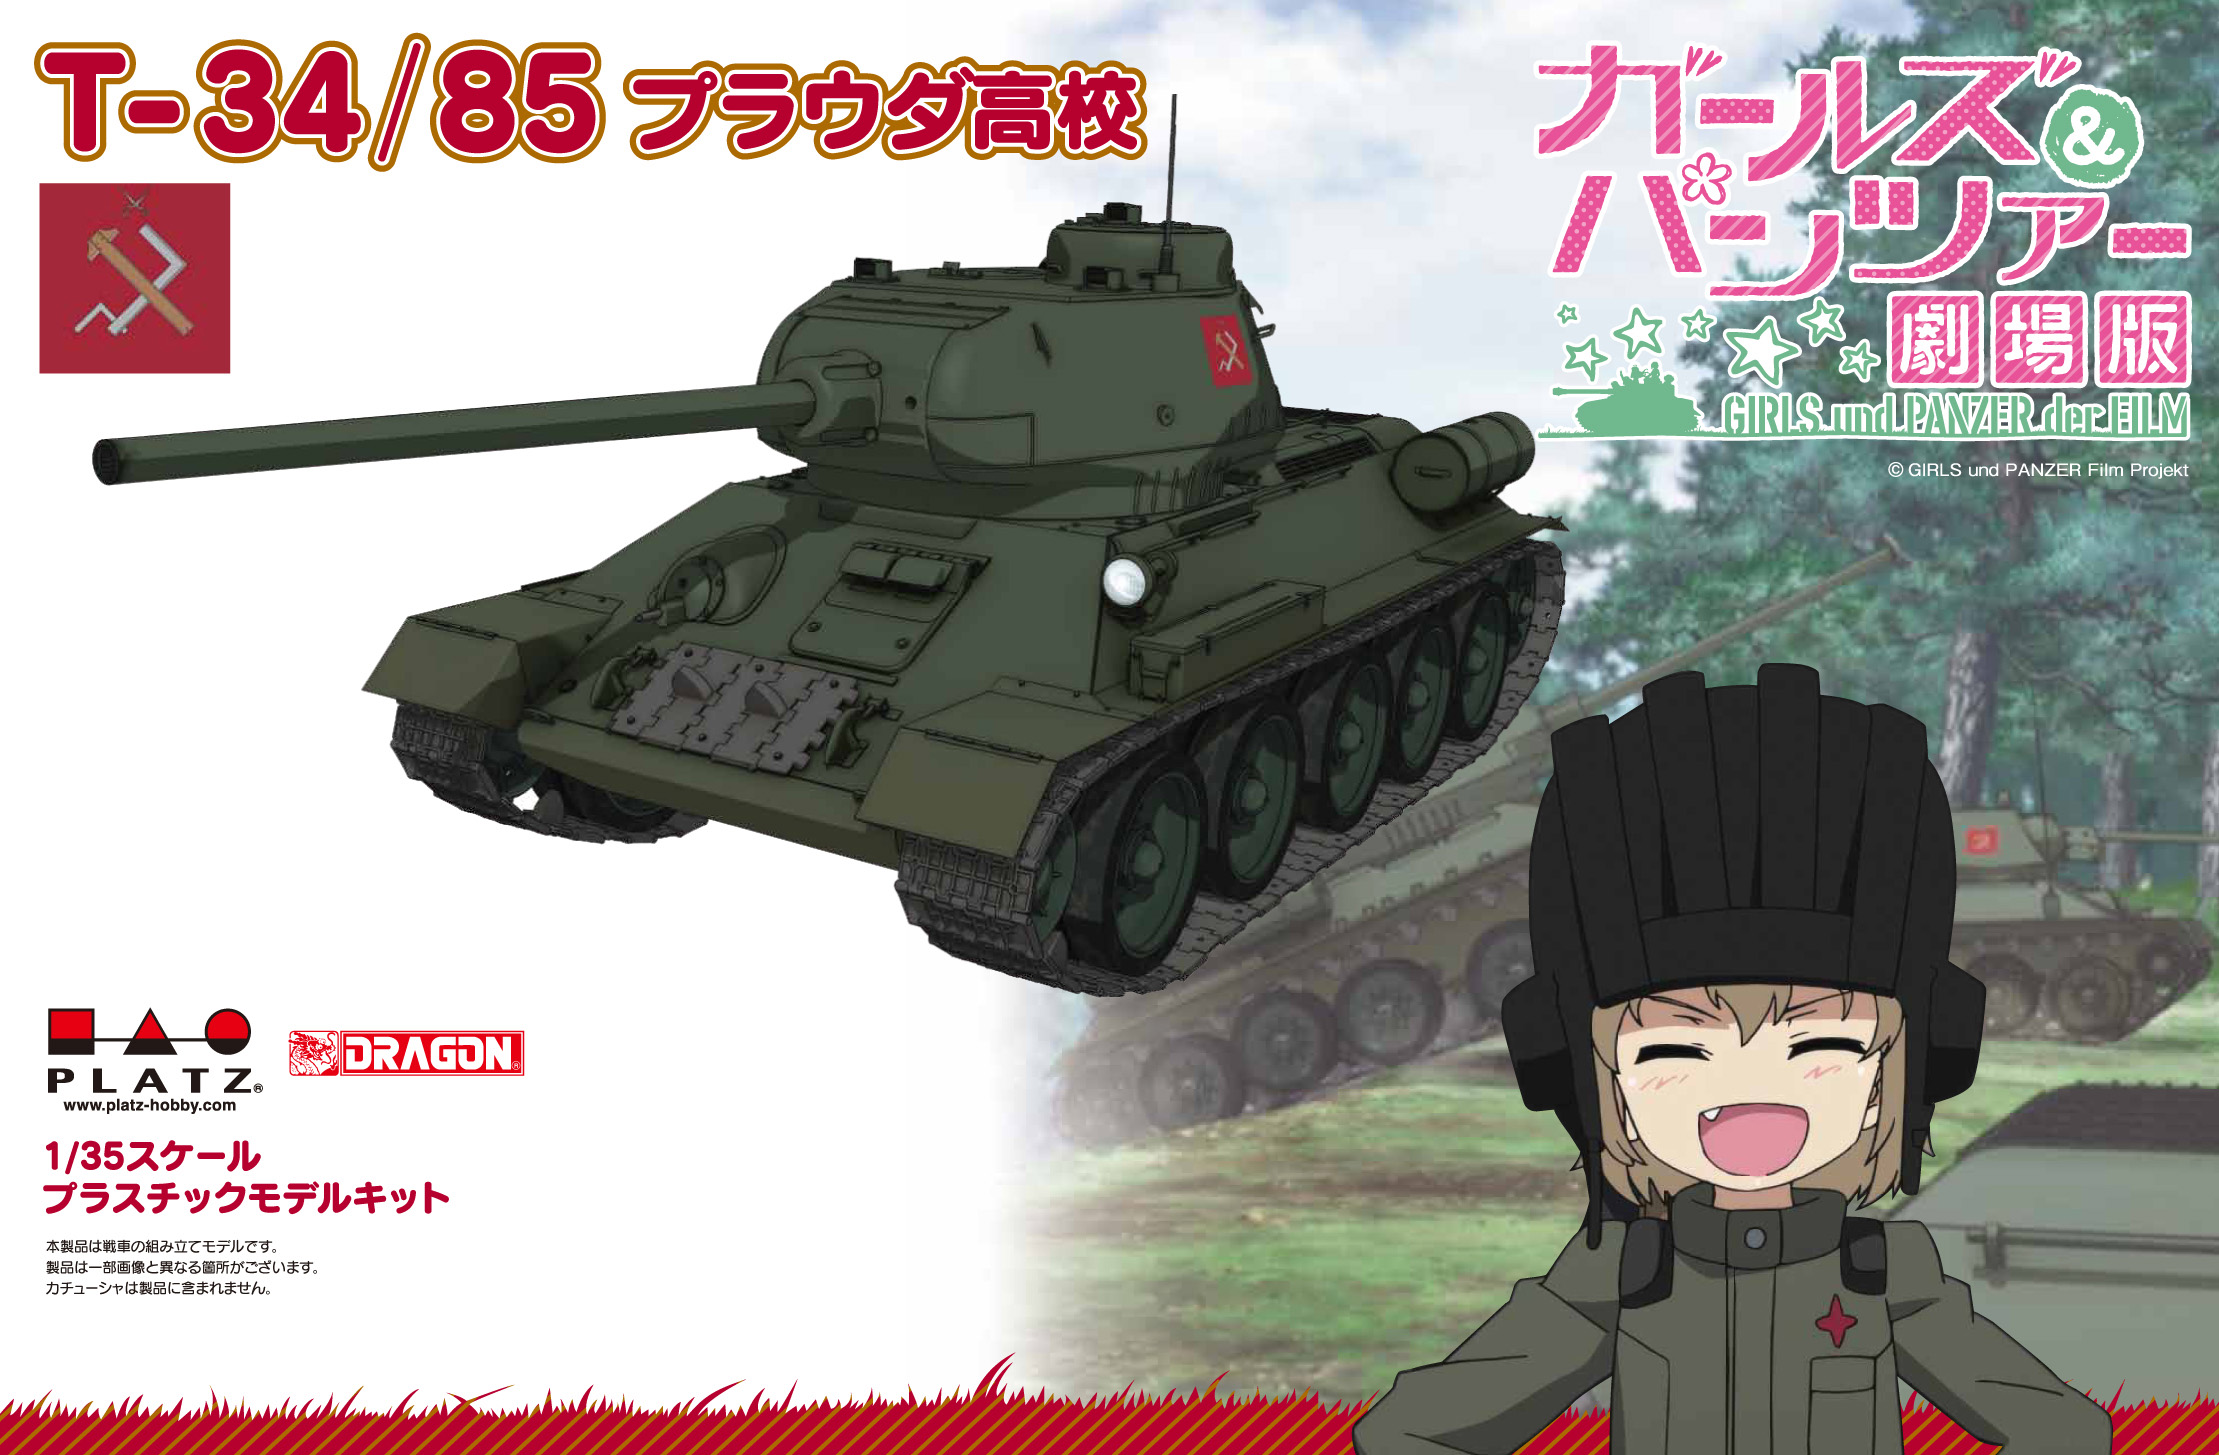 PLATZ 1/35 Medium Tank T-34/85 PRAVDA HIGH SCHOOL